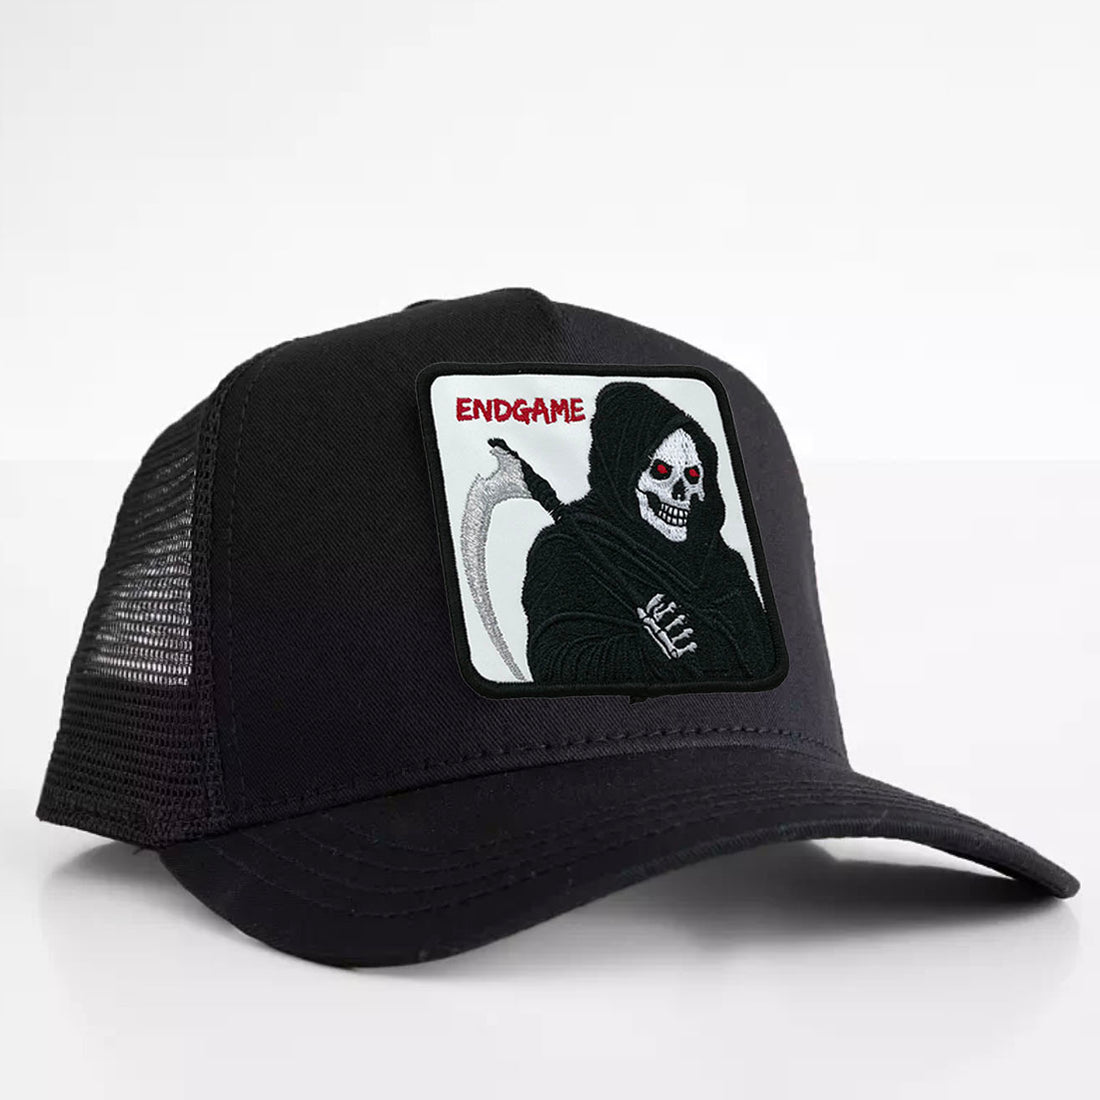 Grim Reaper - "Endgame" Trucker Hat